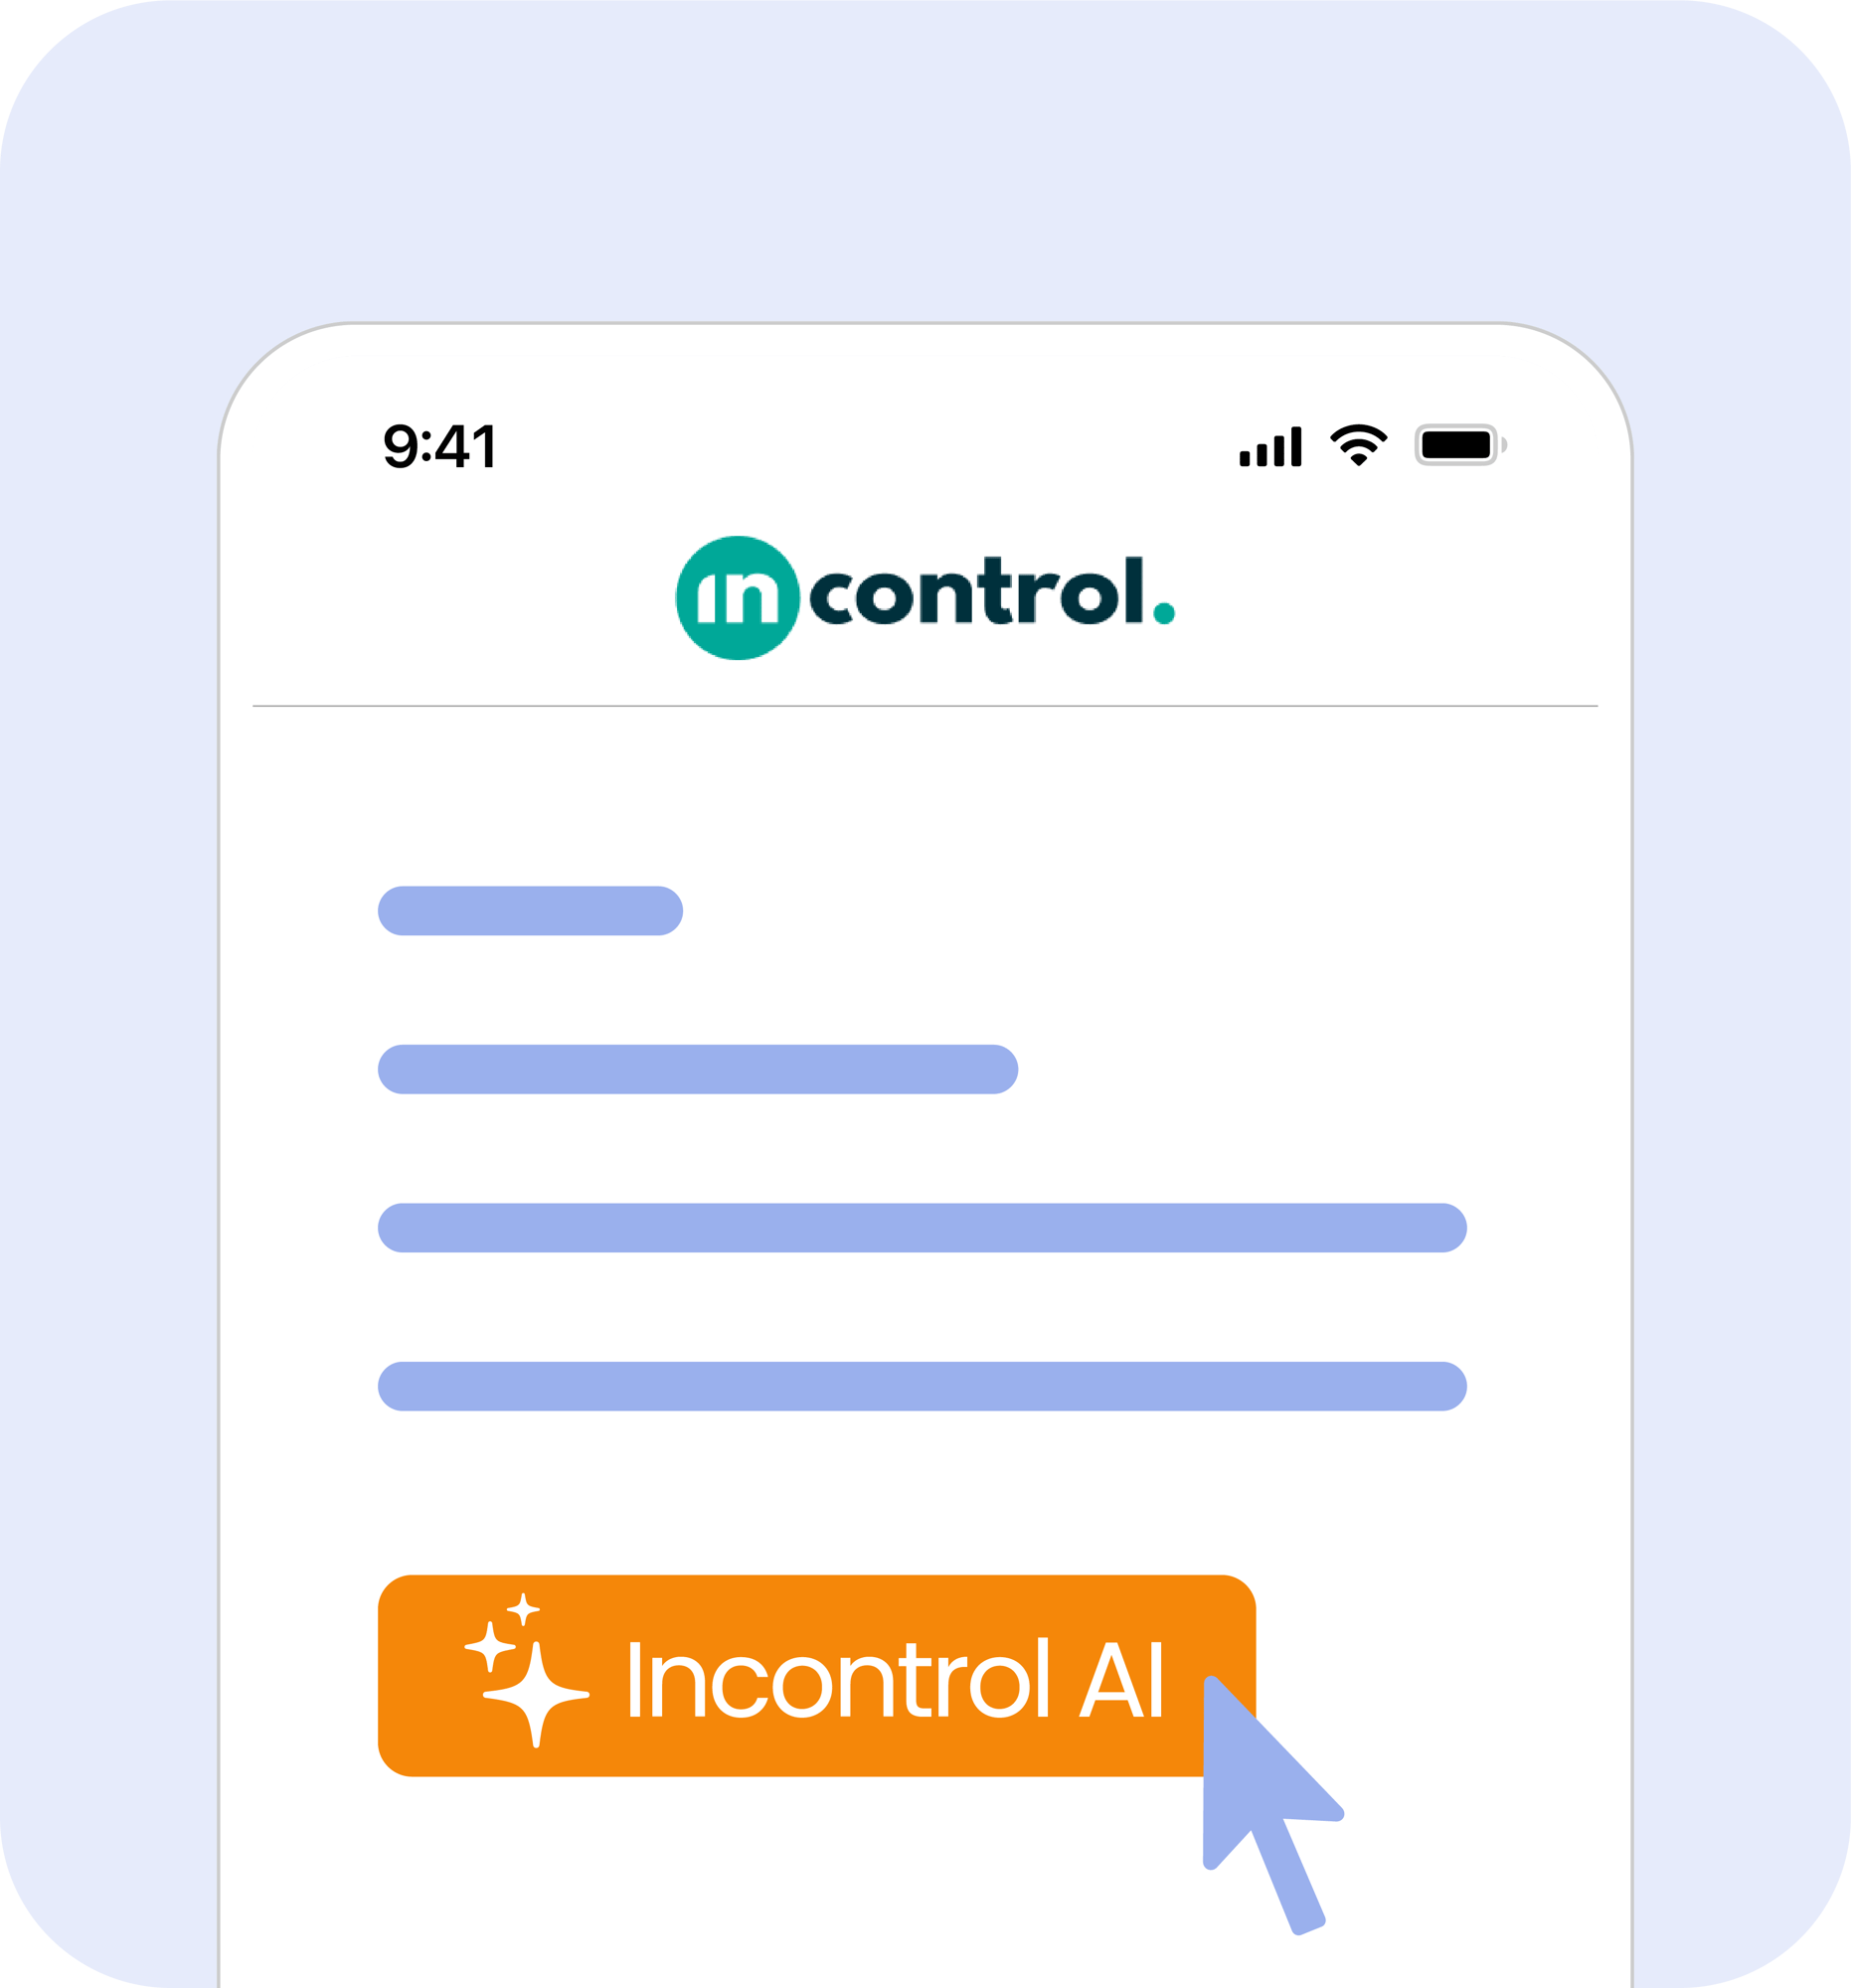 Incontrol-AI-product-tour-NL